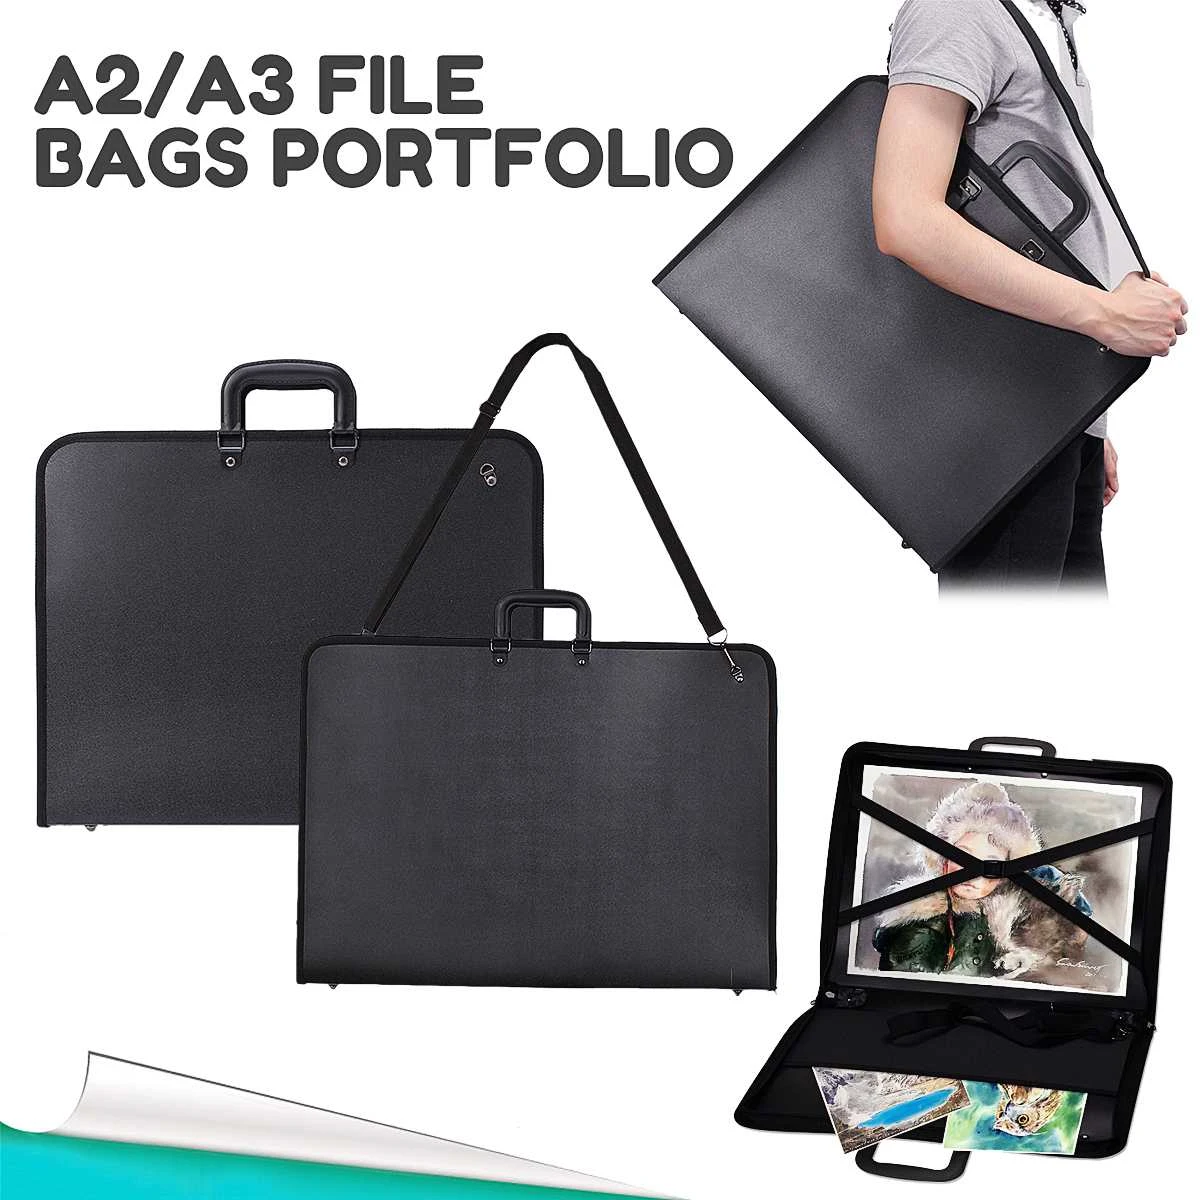 37 x 48cm Art Portfolio Expanding Folder File Organizer Carry Case